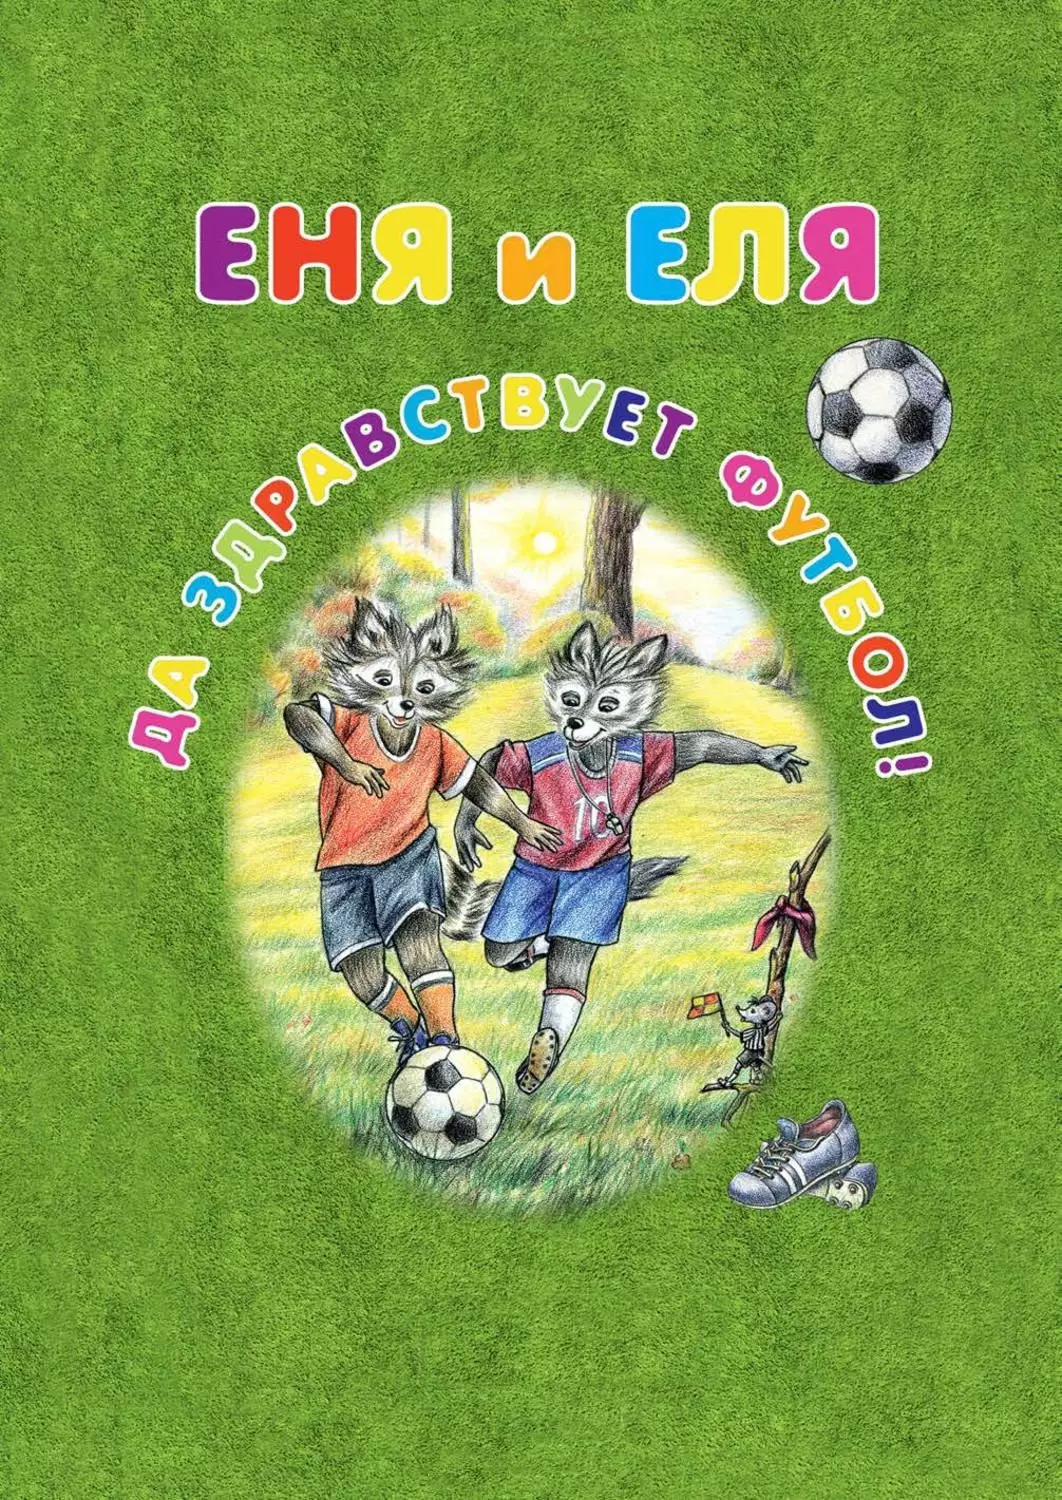 Произведения 2018 года. Детские книжки про футбол. Детская книга Еня и Еля.